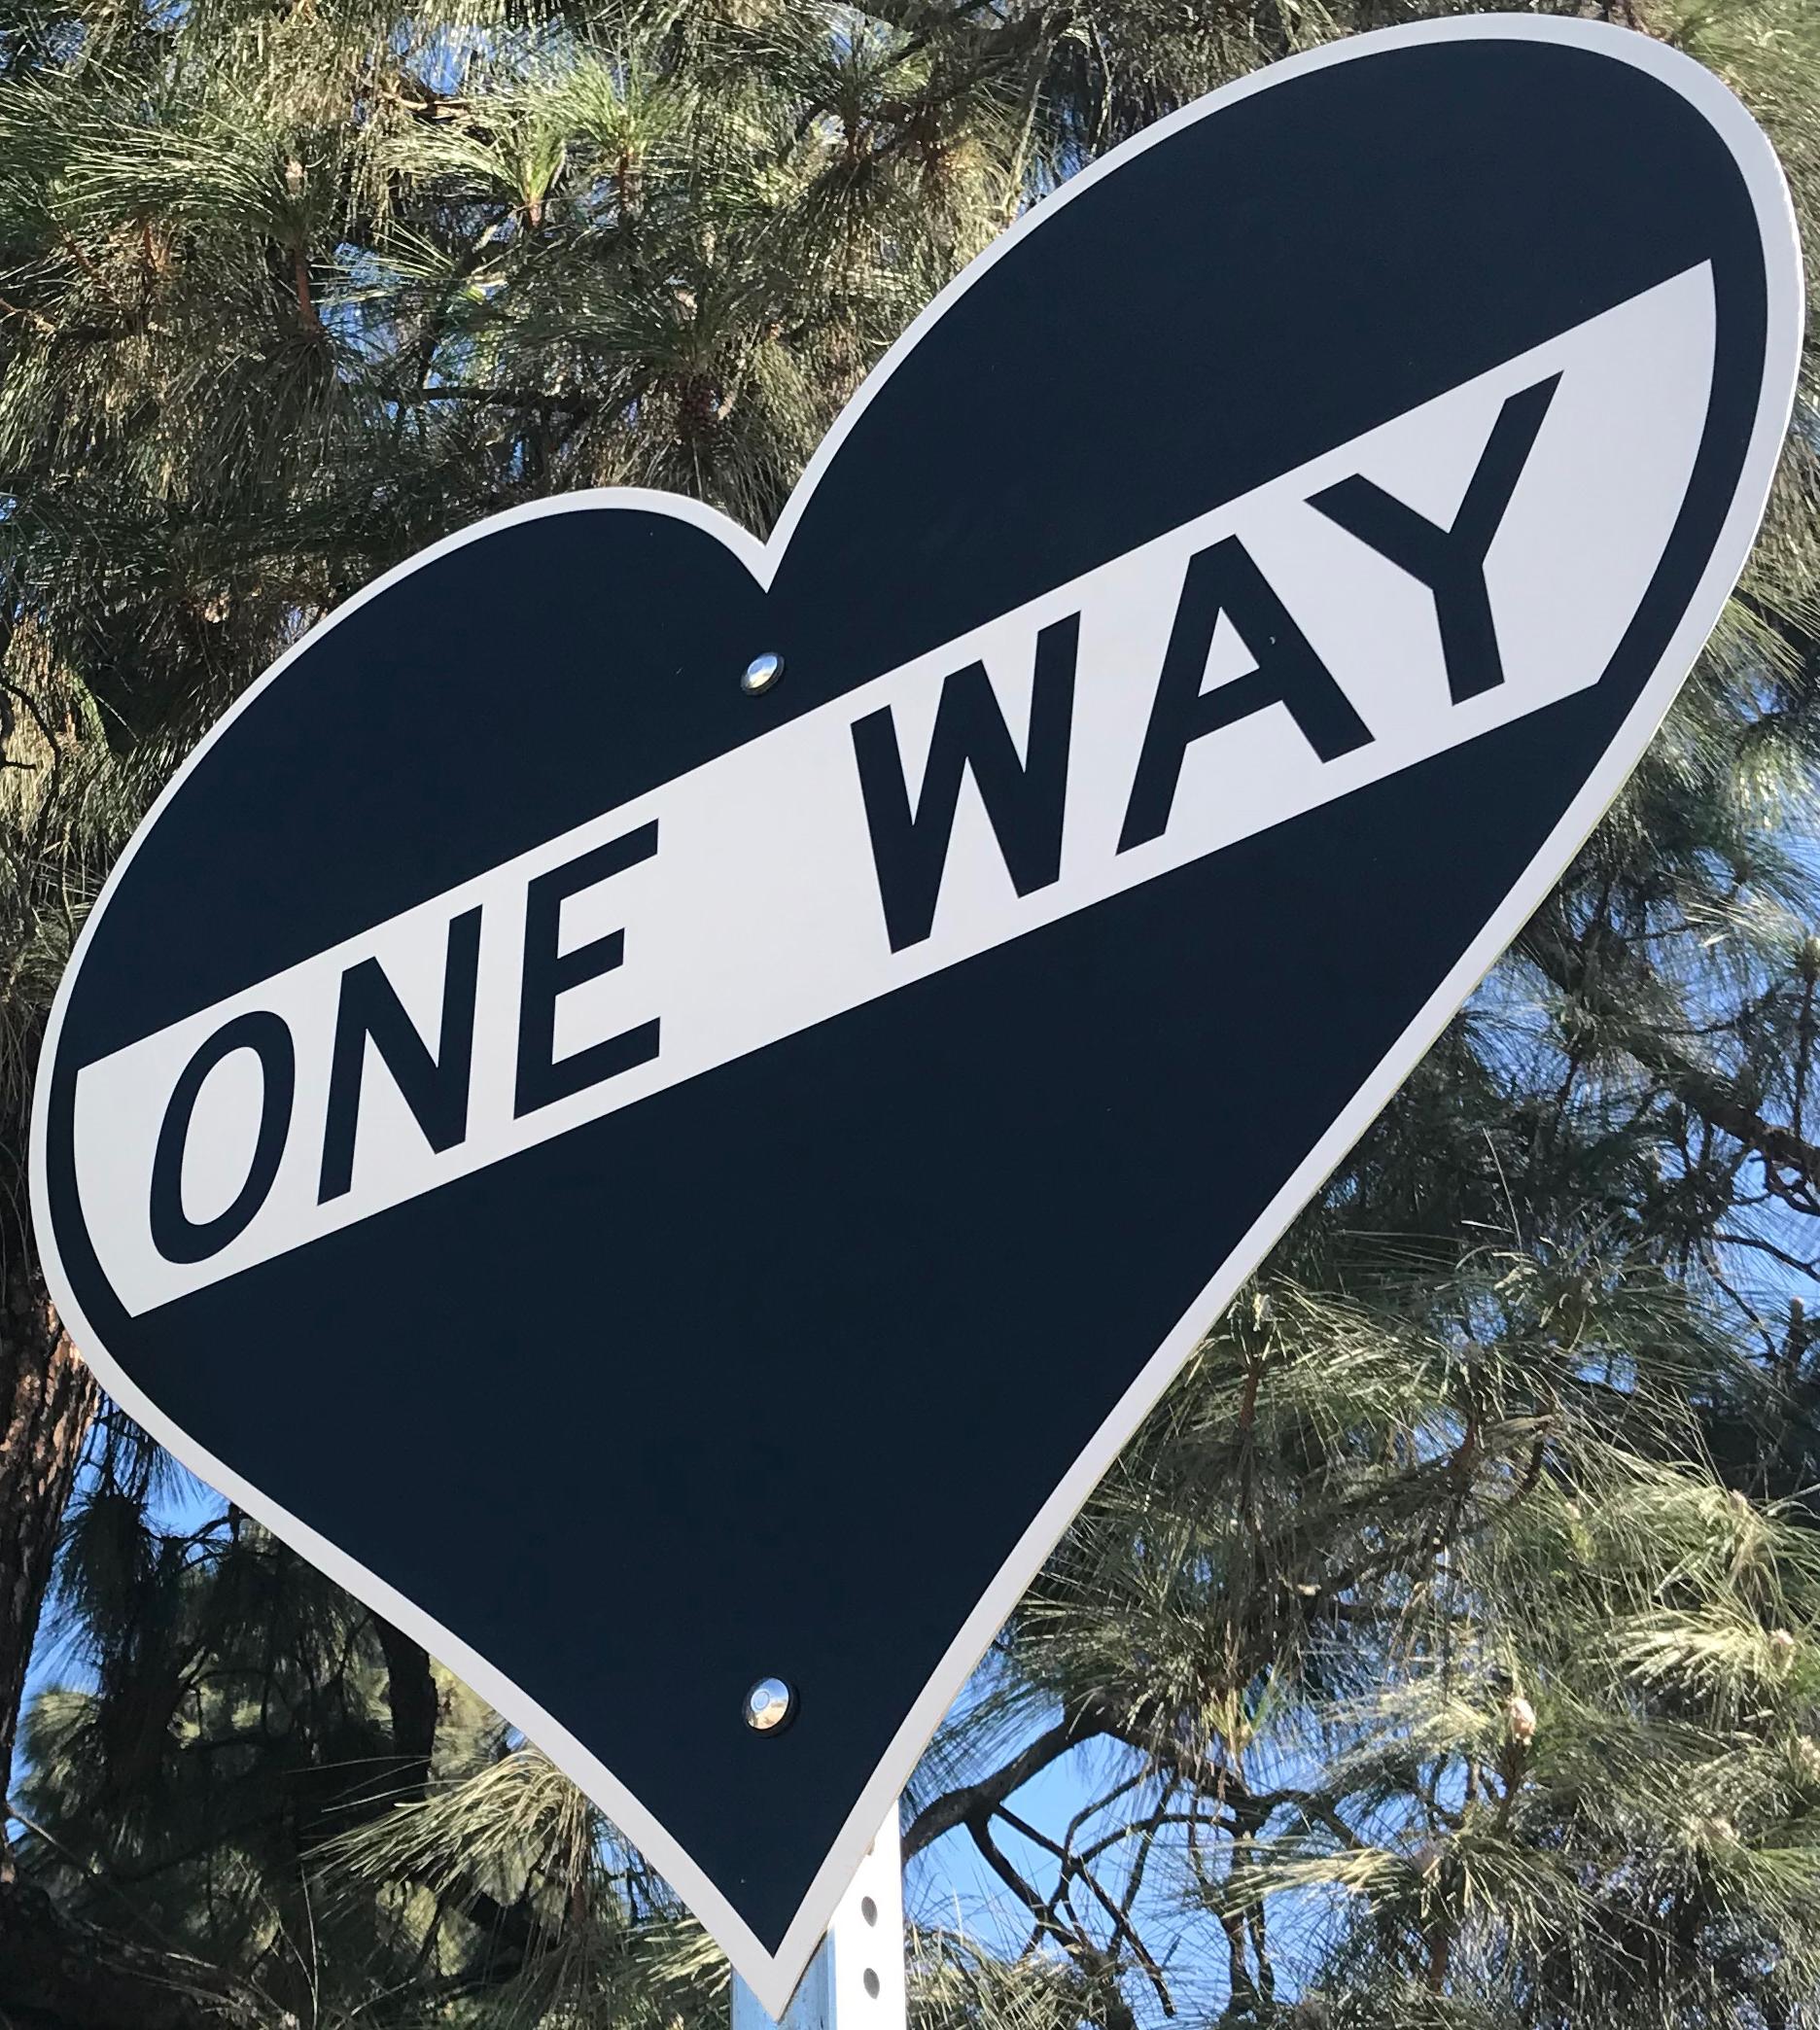 "One Way - Heart"  - Contemporary Street Sign Sculpture - Mixed Media Art by Scott Froschauer